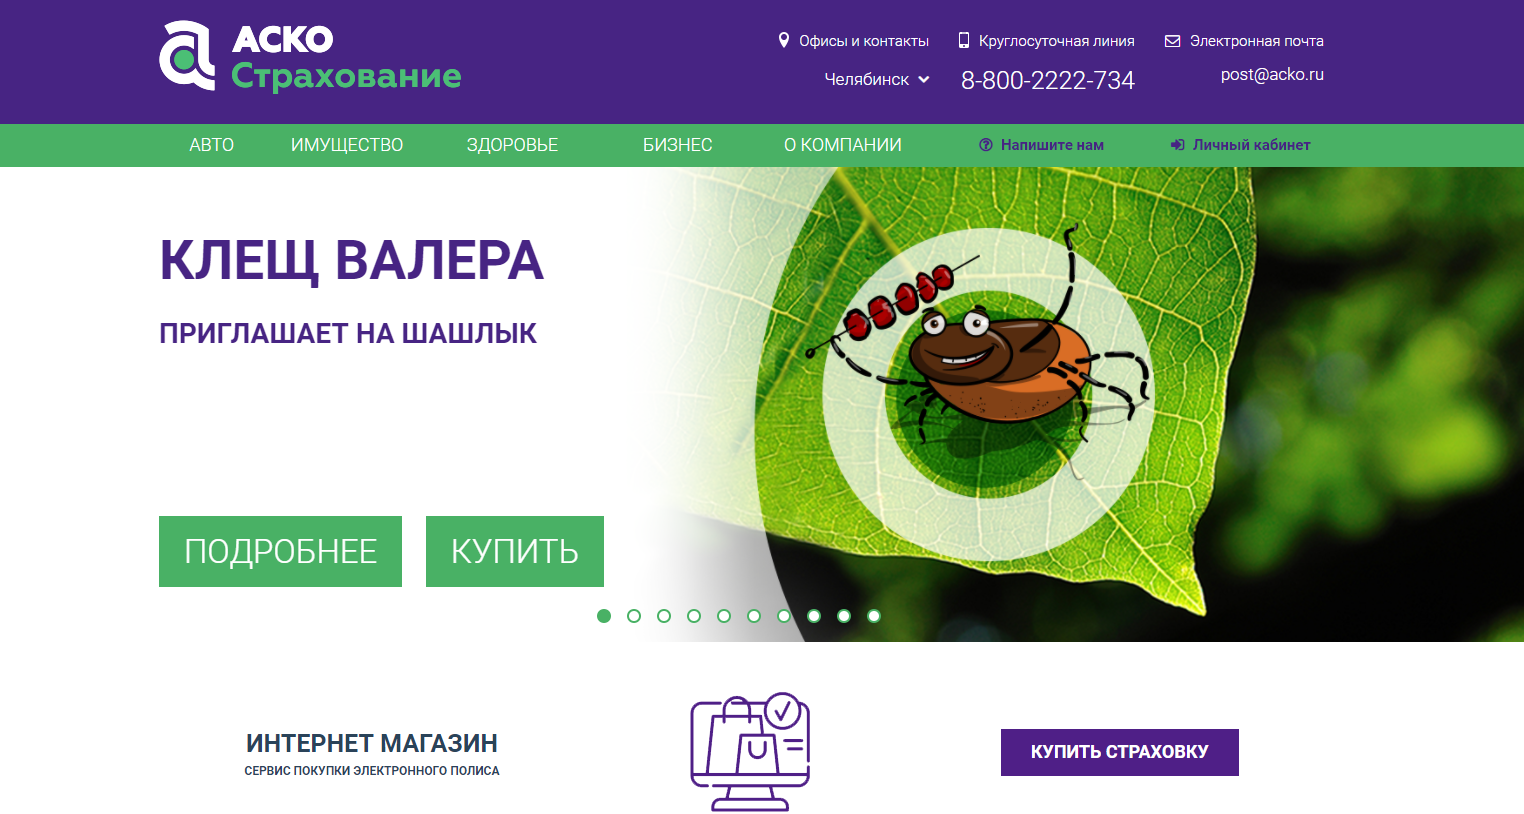 Клещ страхование. Изображения от клеща страхование. Страхование от клеща Сбербанк. Страхование от клеща Новосибирск.